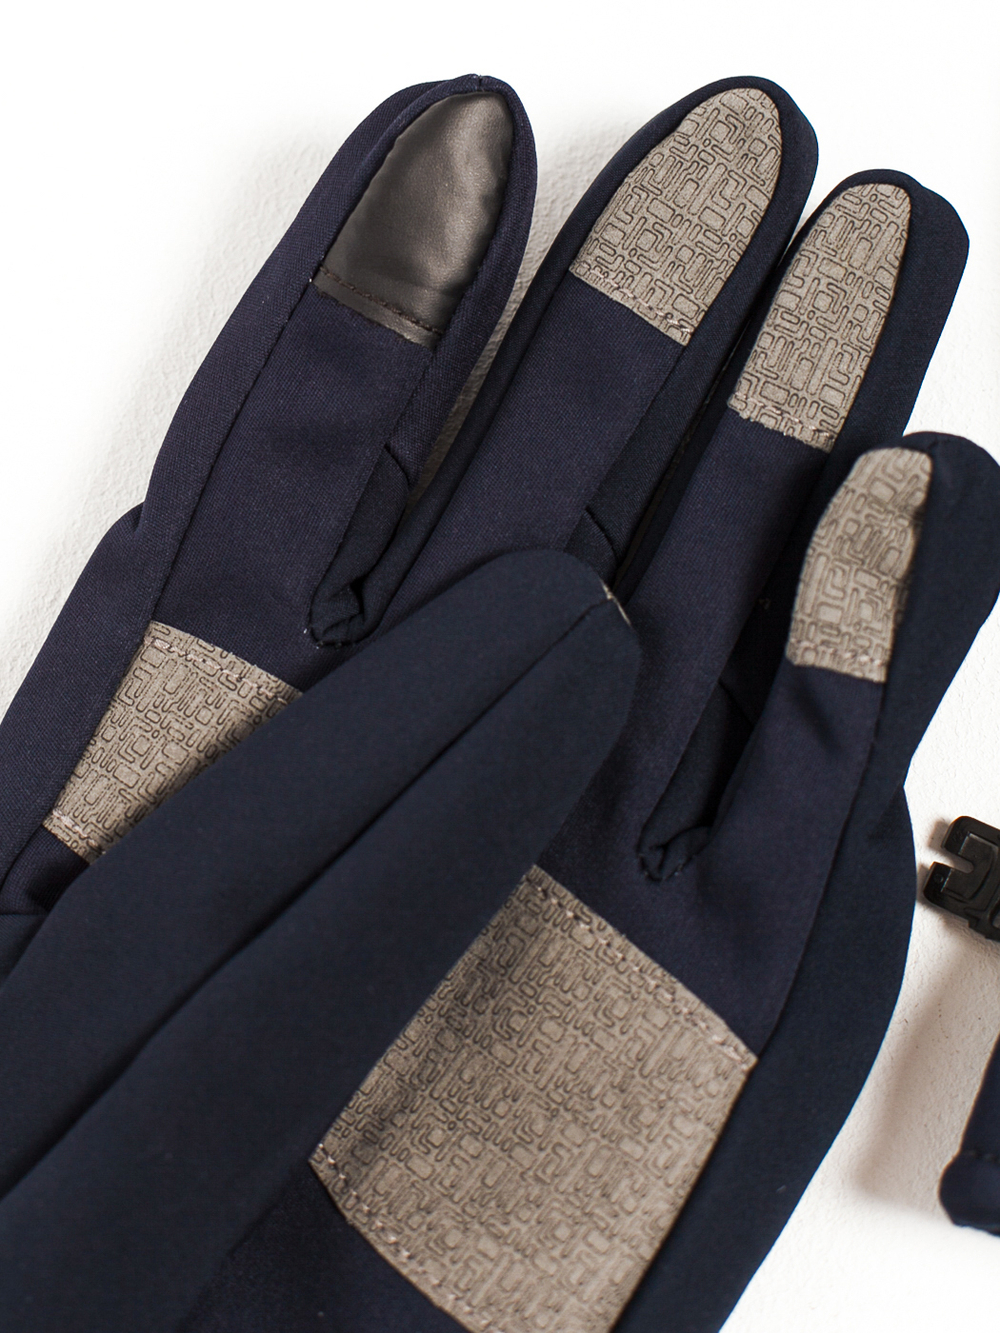 Утепленные перчатки Under Armour Темно-синие